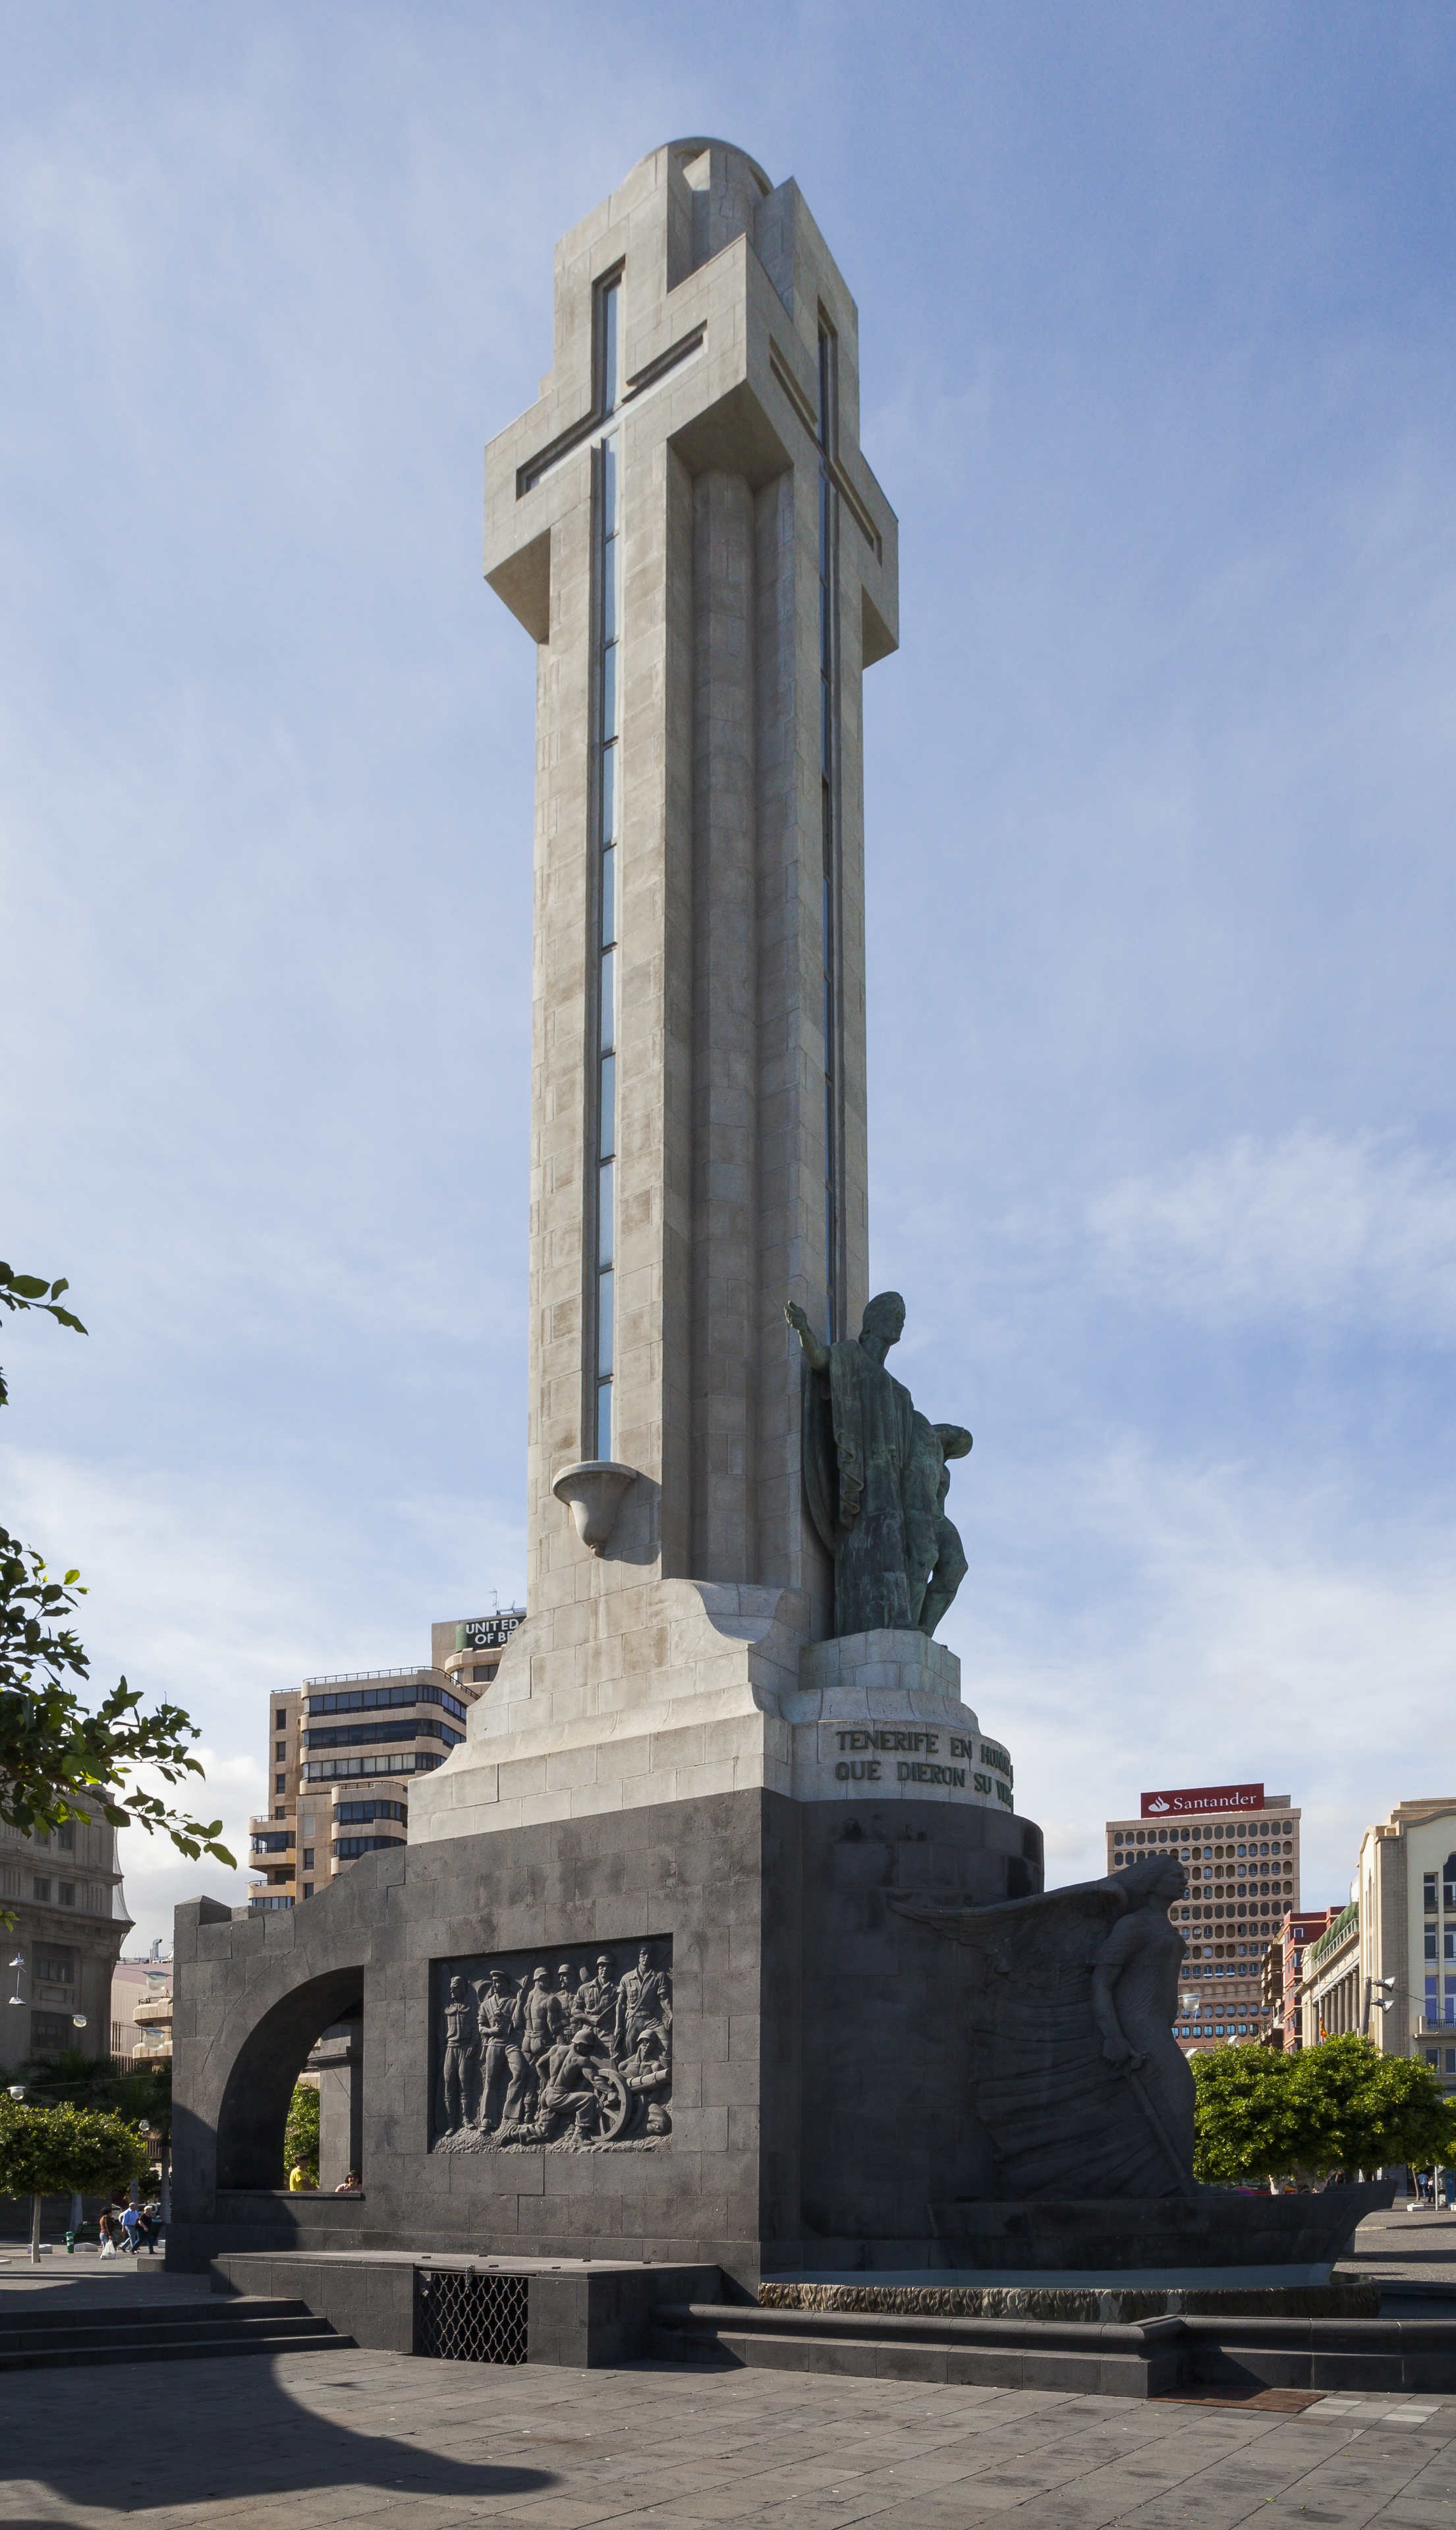 Monumento a los Caídos, Santa Cruz de Tenerife, España, 2012-12-15, DD 01